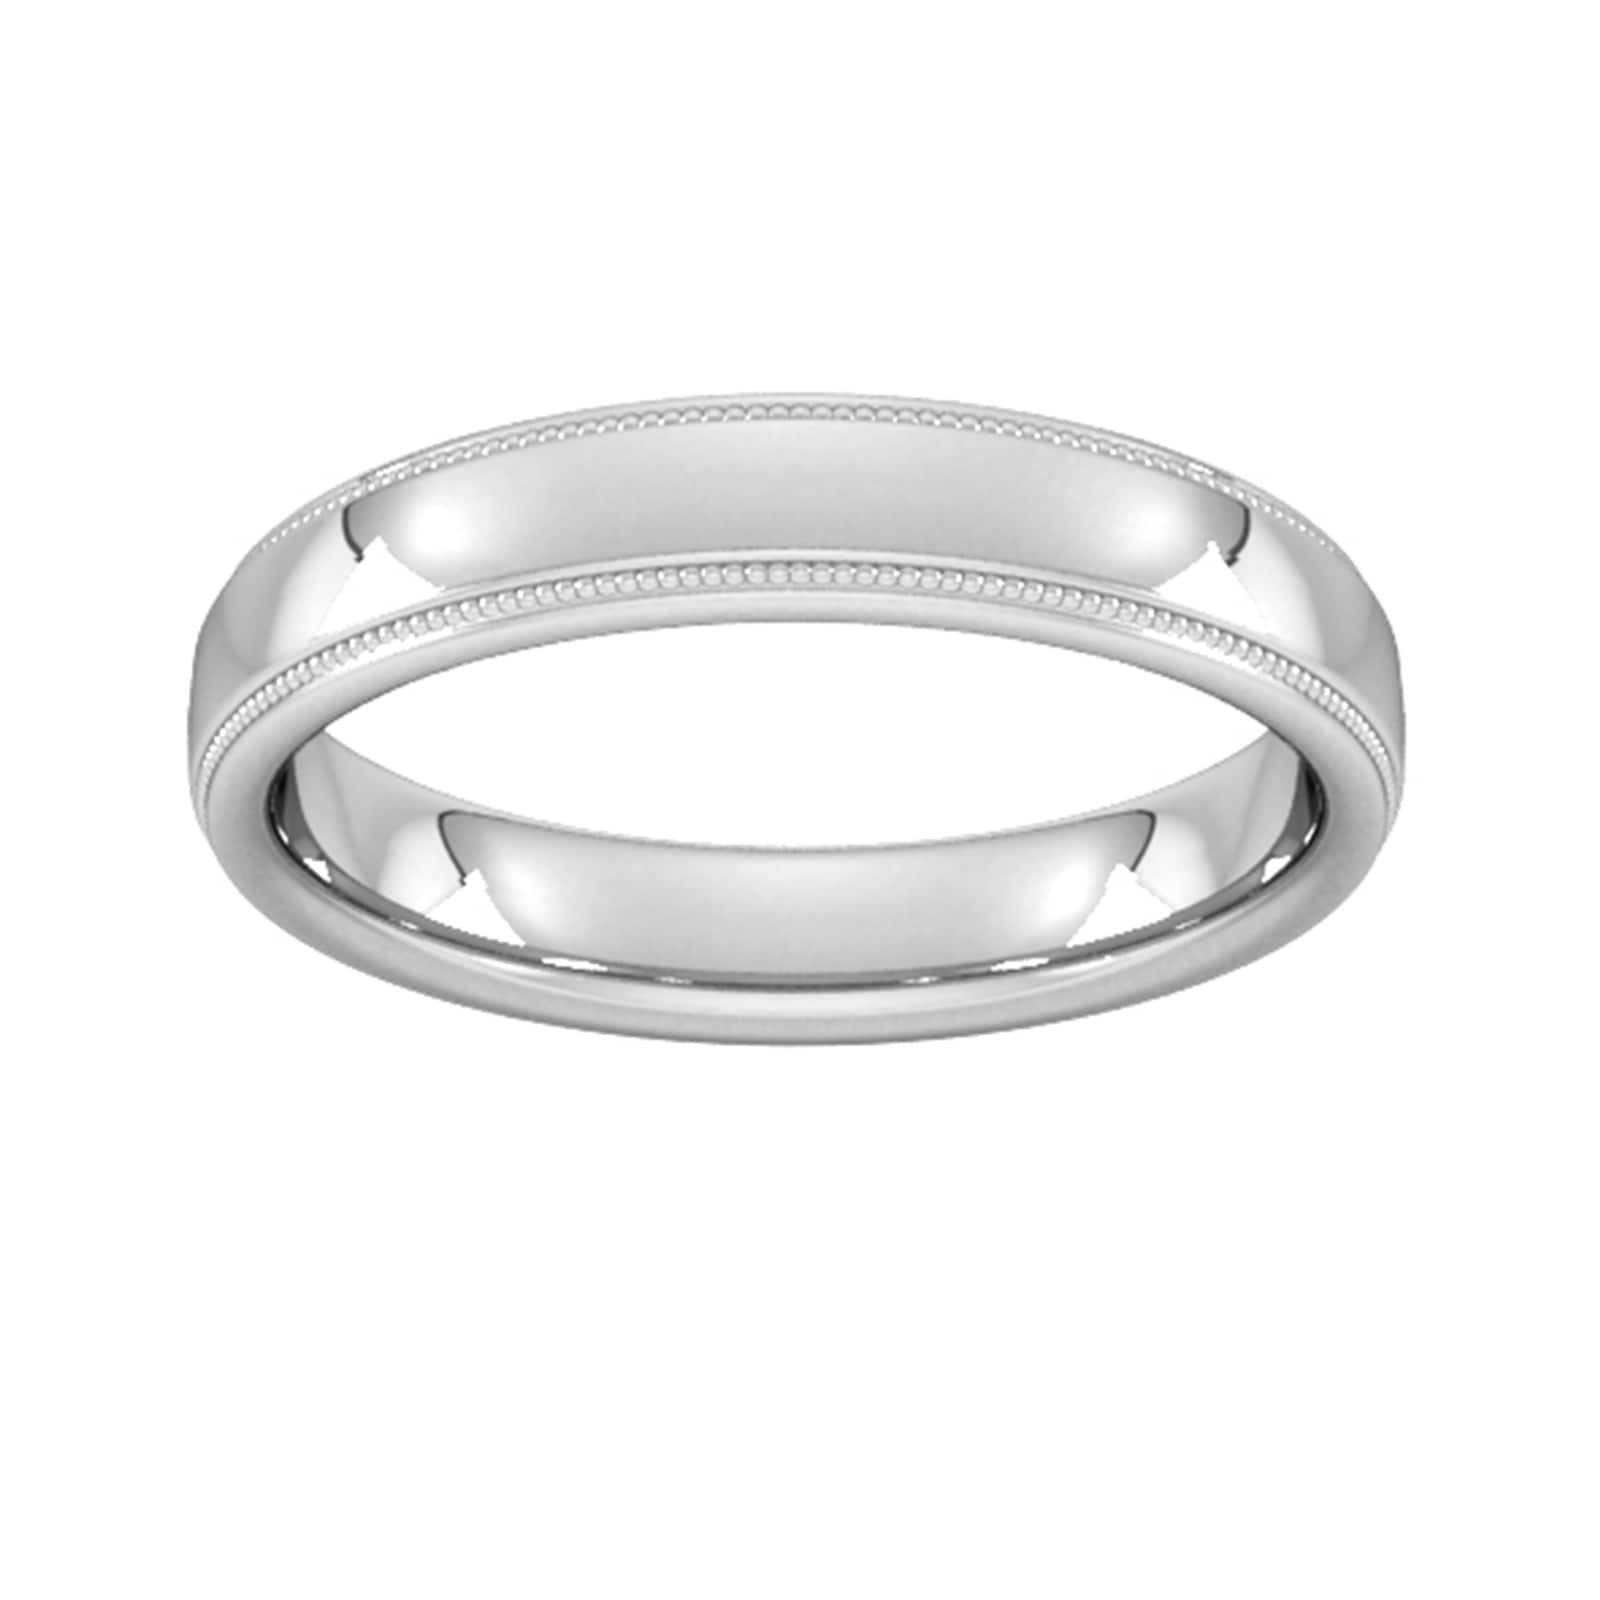 4mm Slight Court Heavy Milgrain Edge Wedding Ring In 18 Carat White Gold - Ring Size V